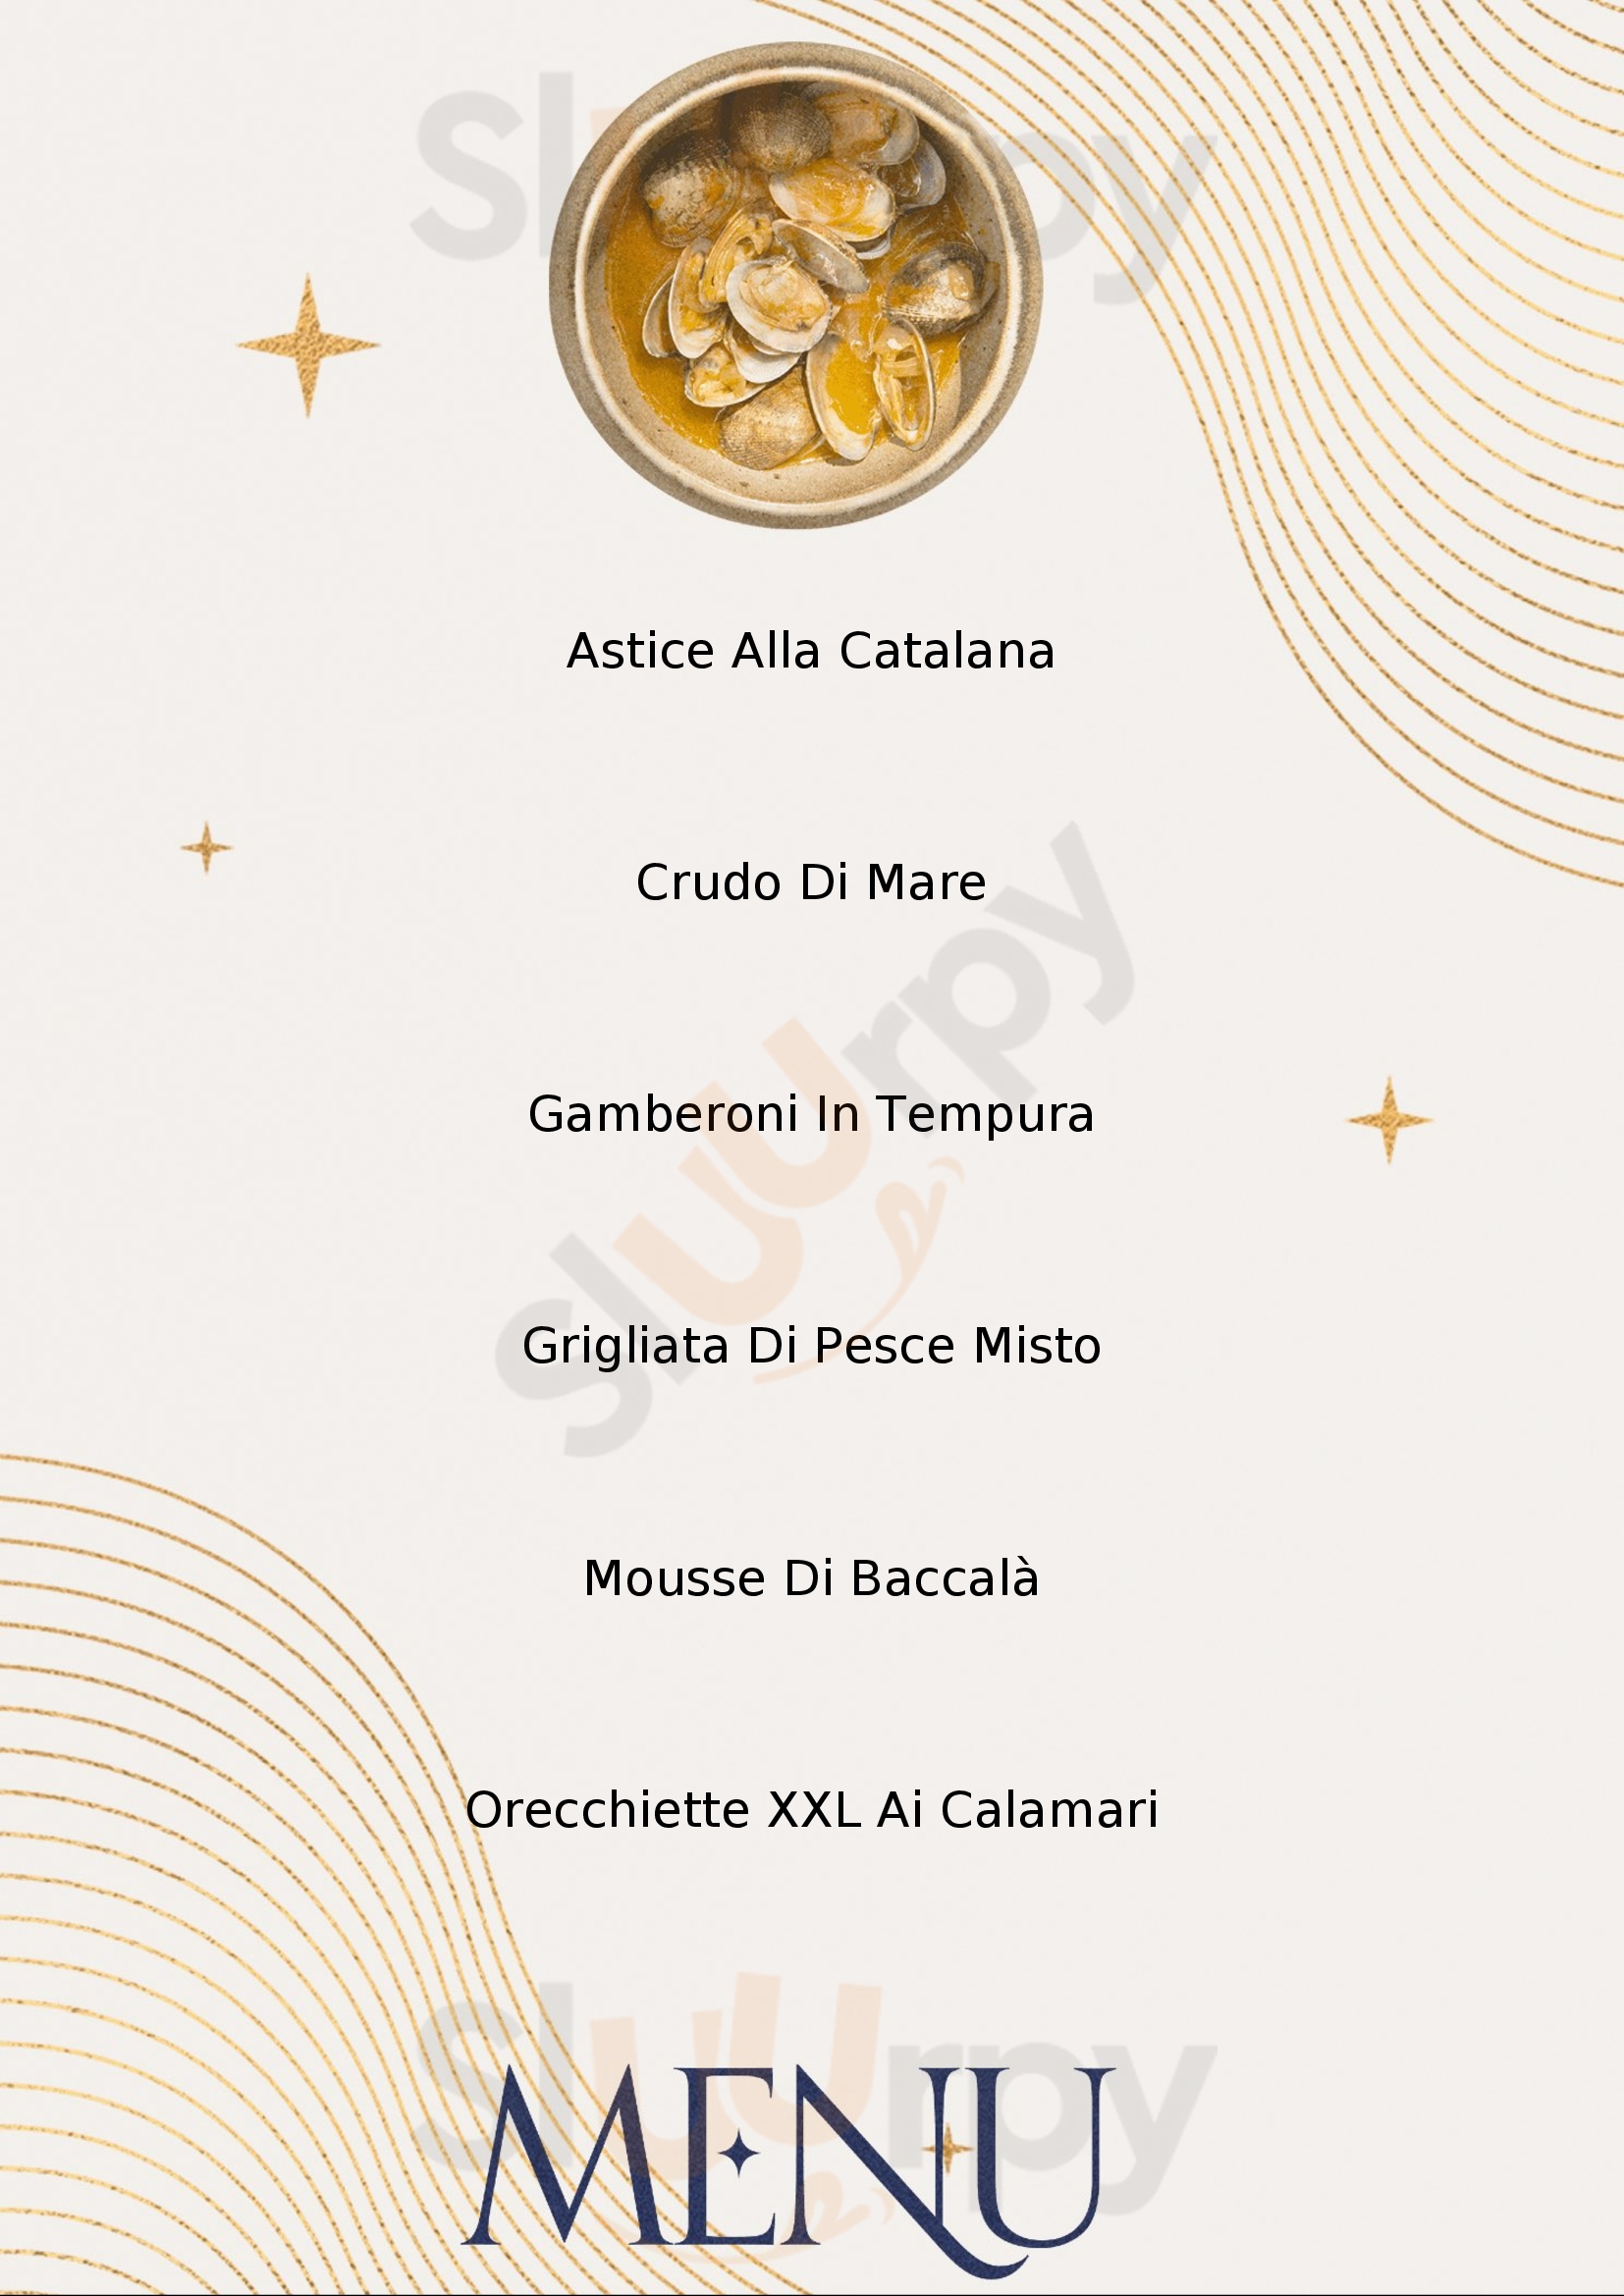 Anastasi Food Drink & More Desenzano Del Garda menù 1 pagina